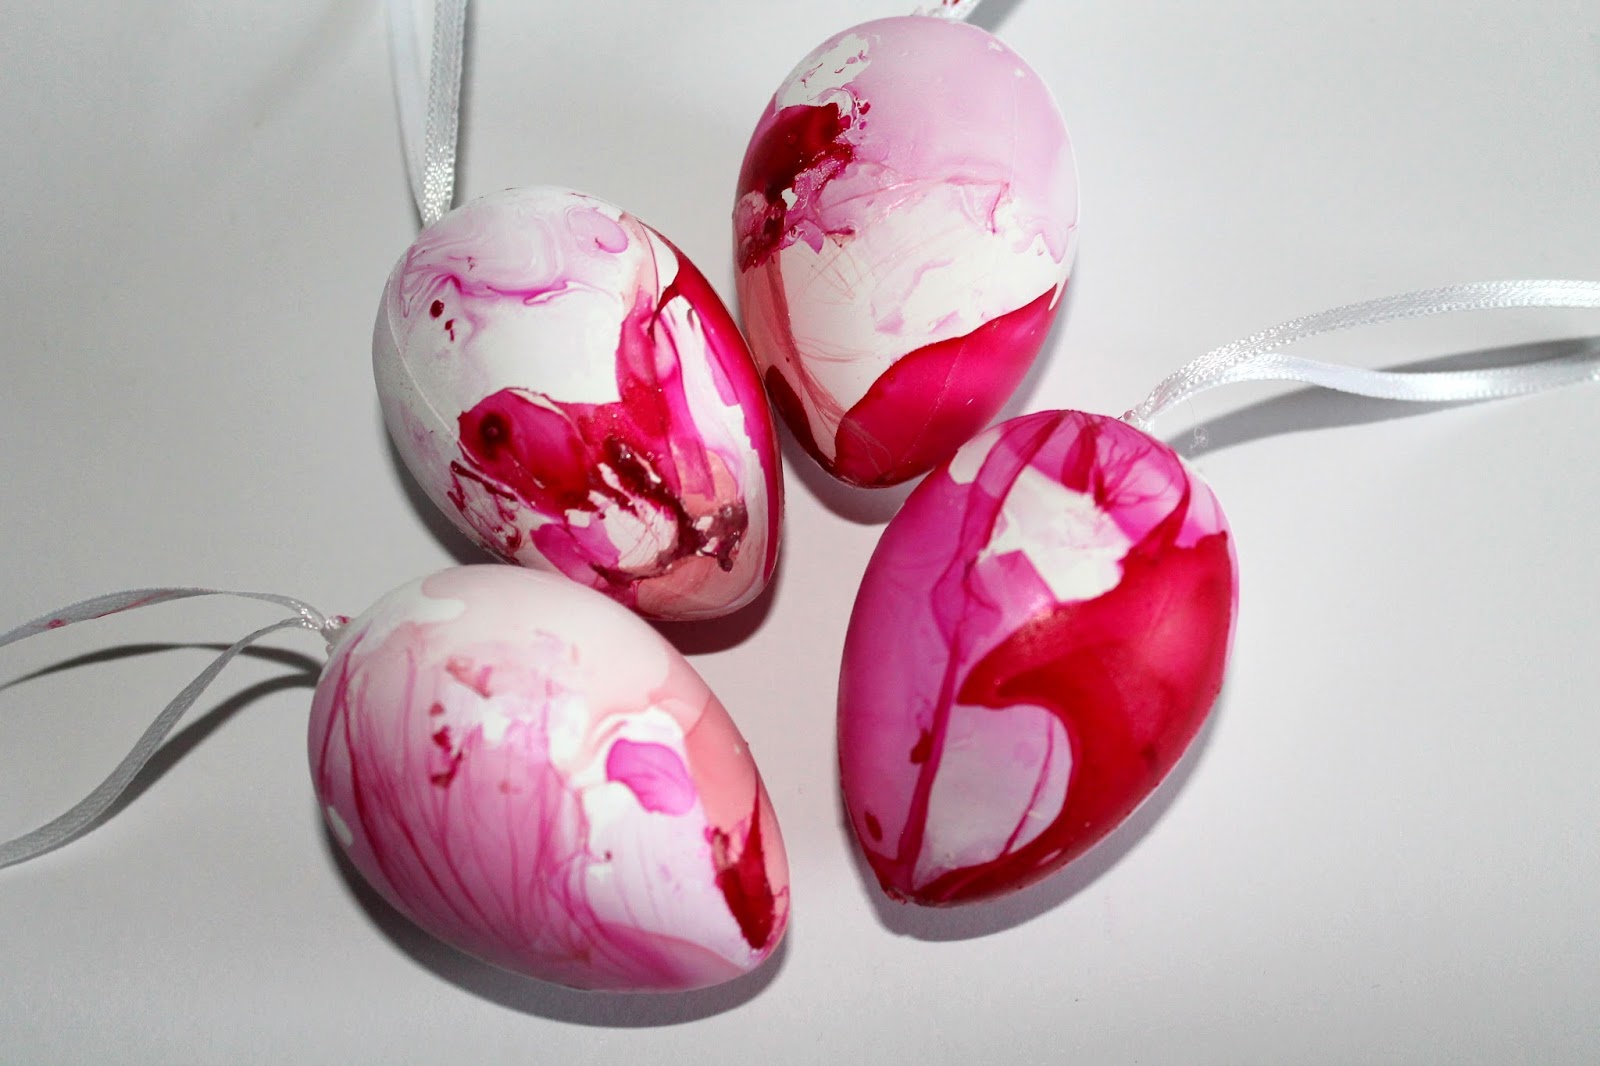 Ostereier färben mal anders: DIY marmorierte Ostereier mit Nagellack ...